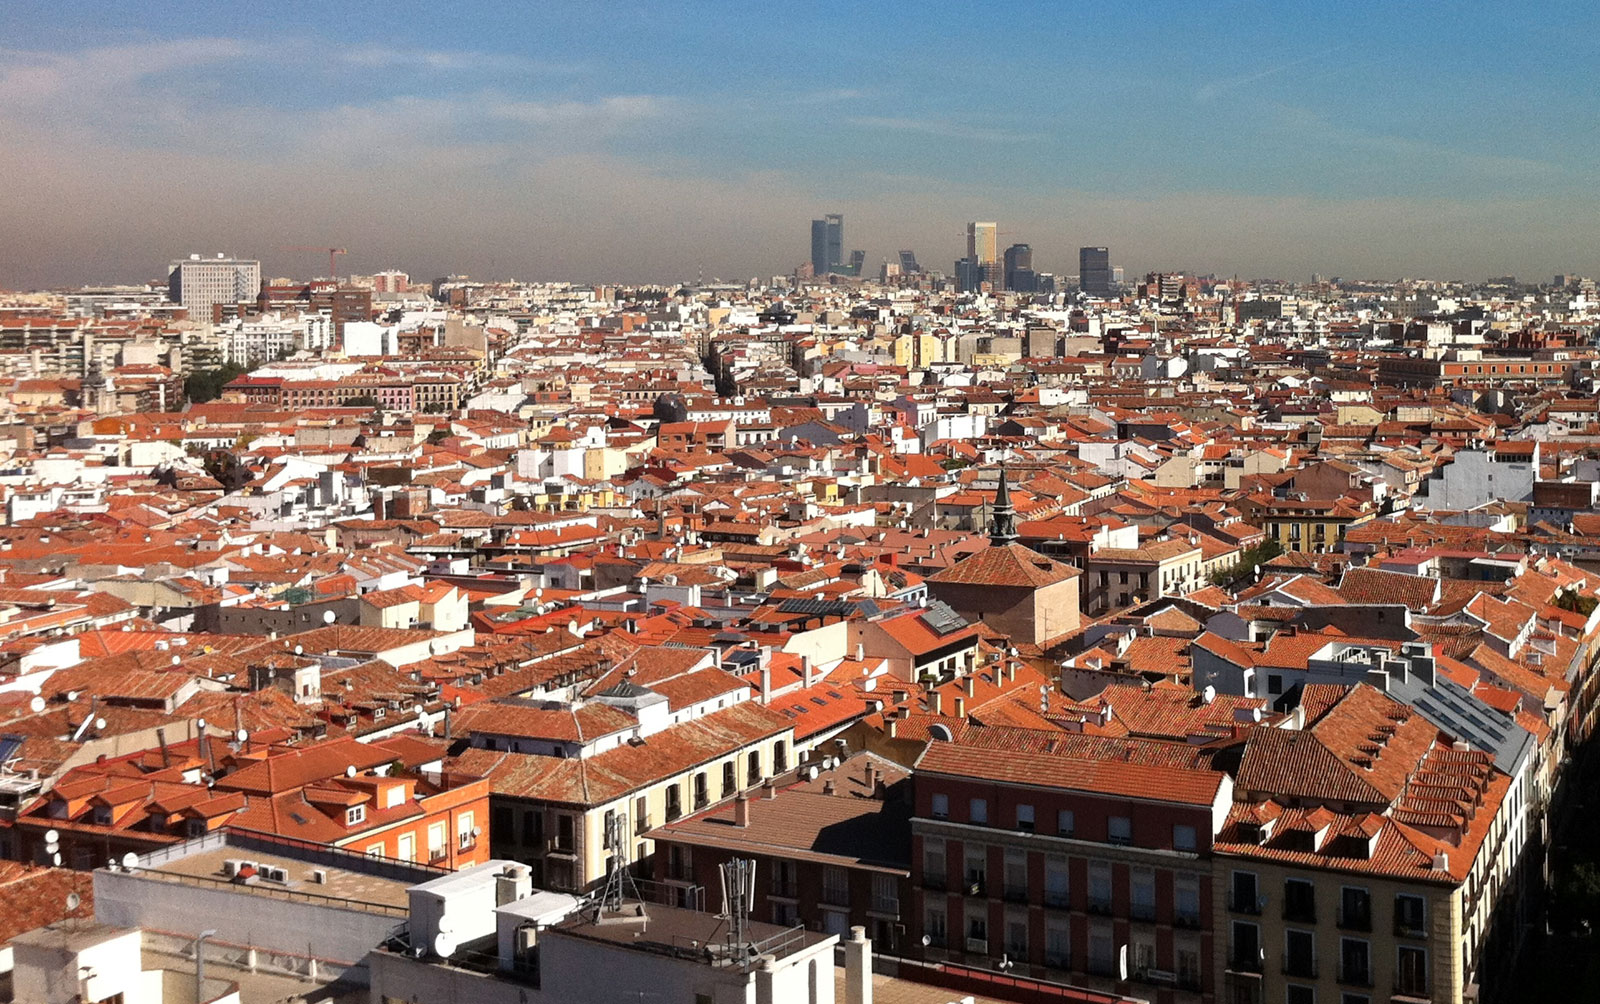 位於伊比利半岛中心的马德里为西班牙的首都以及经济